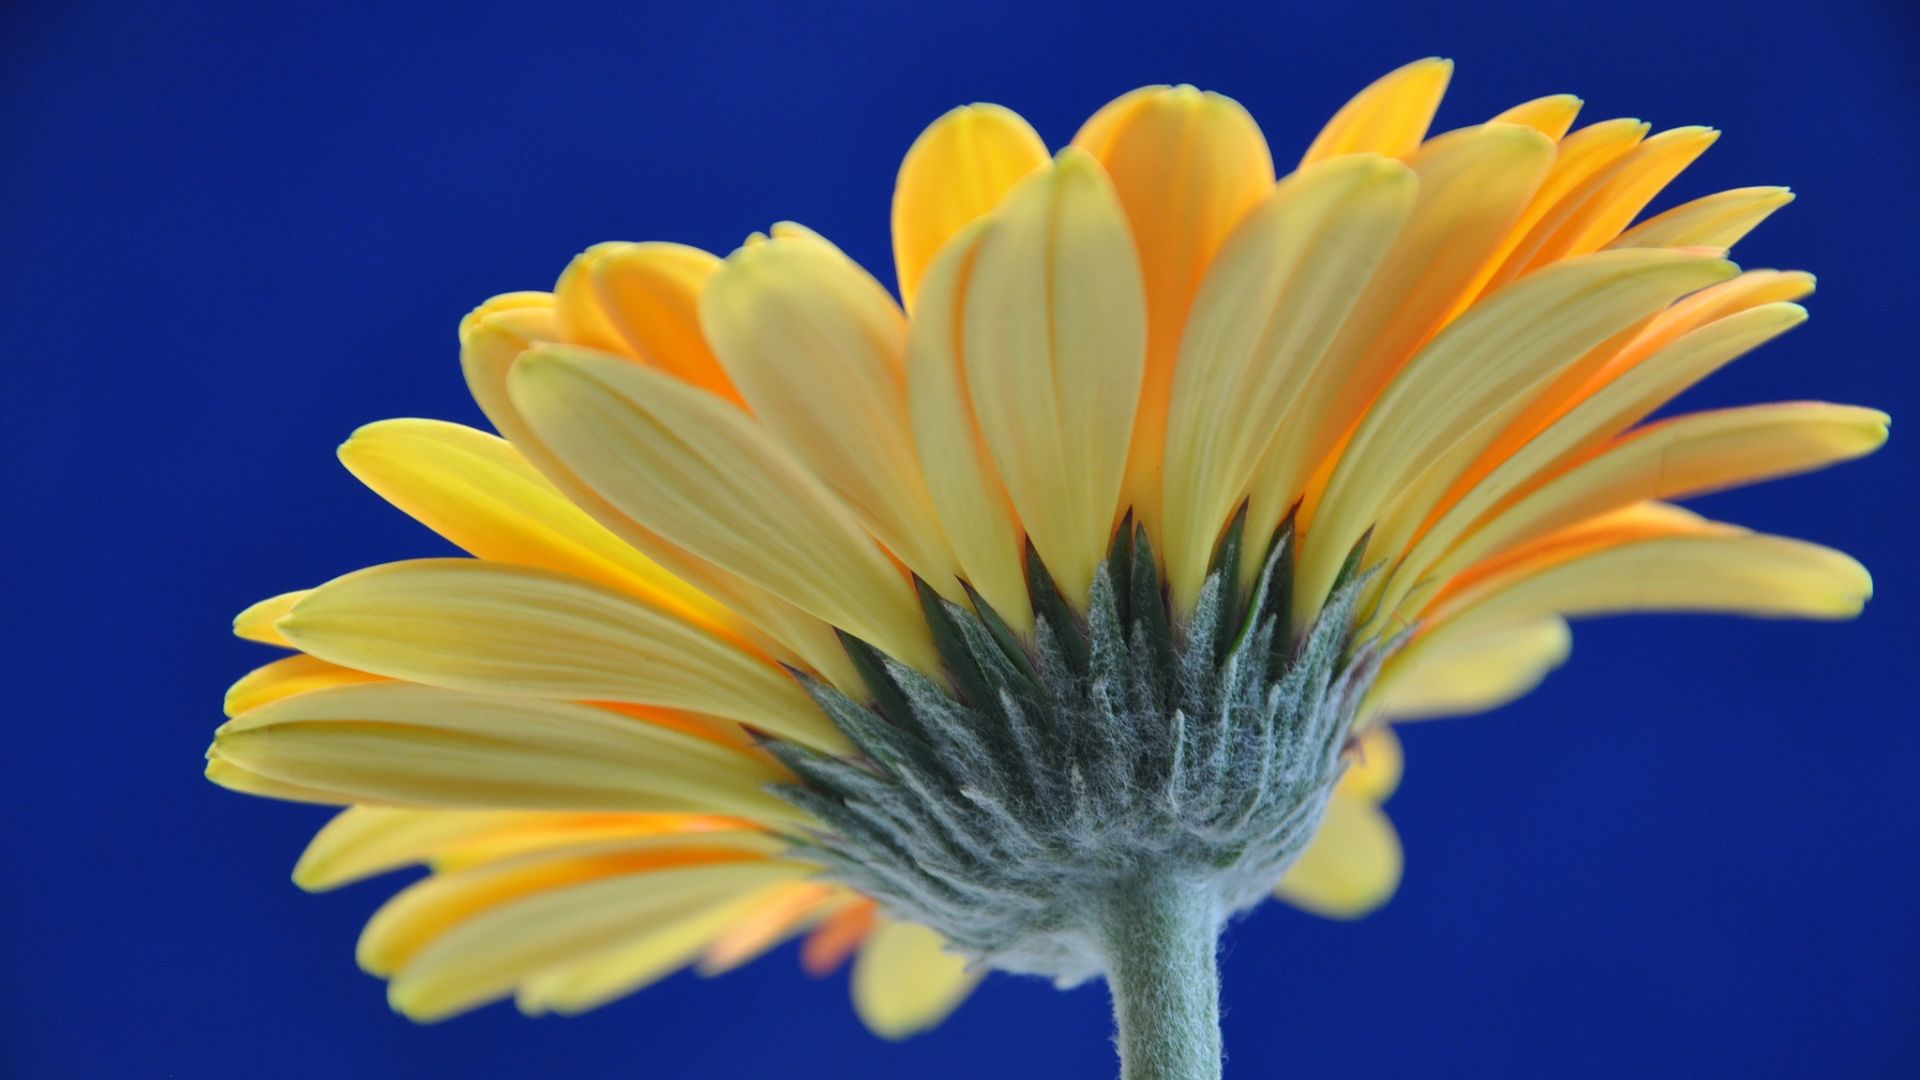 Wallpaper Gerbera, yellow daisy, flower, close up, petals